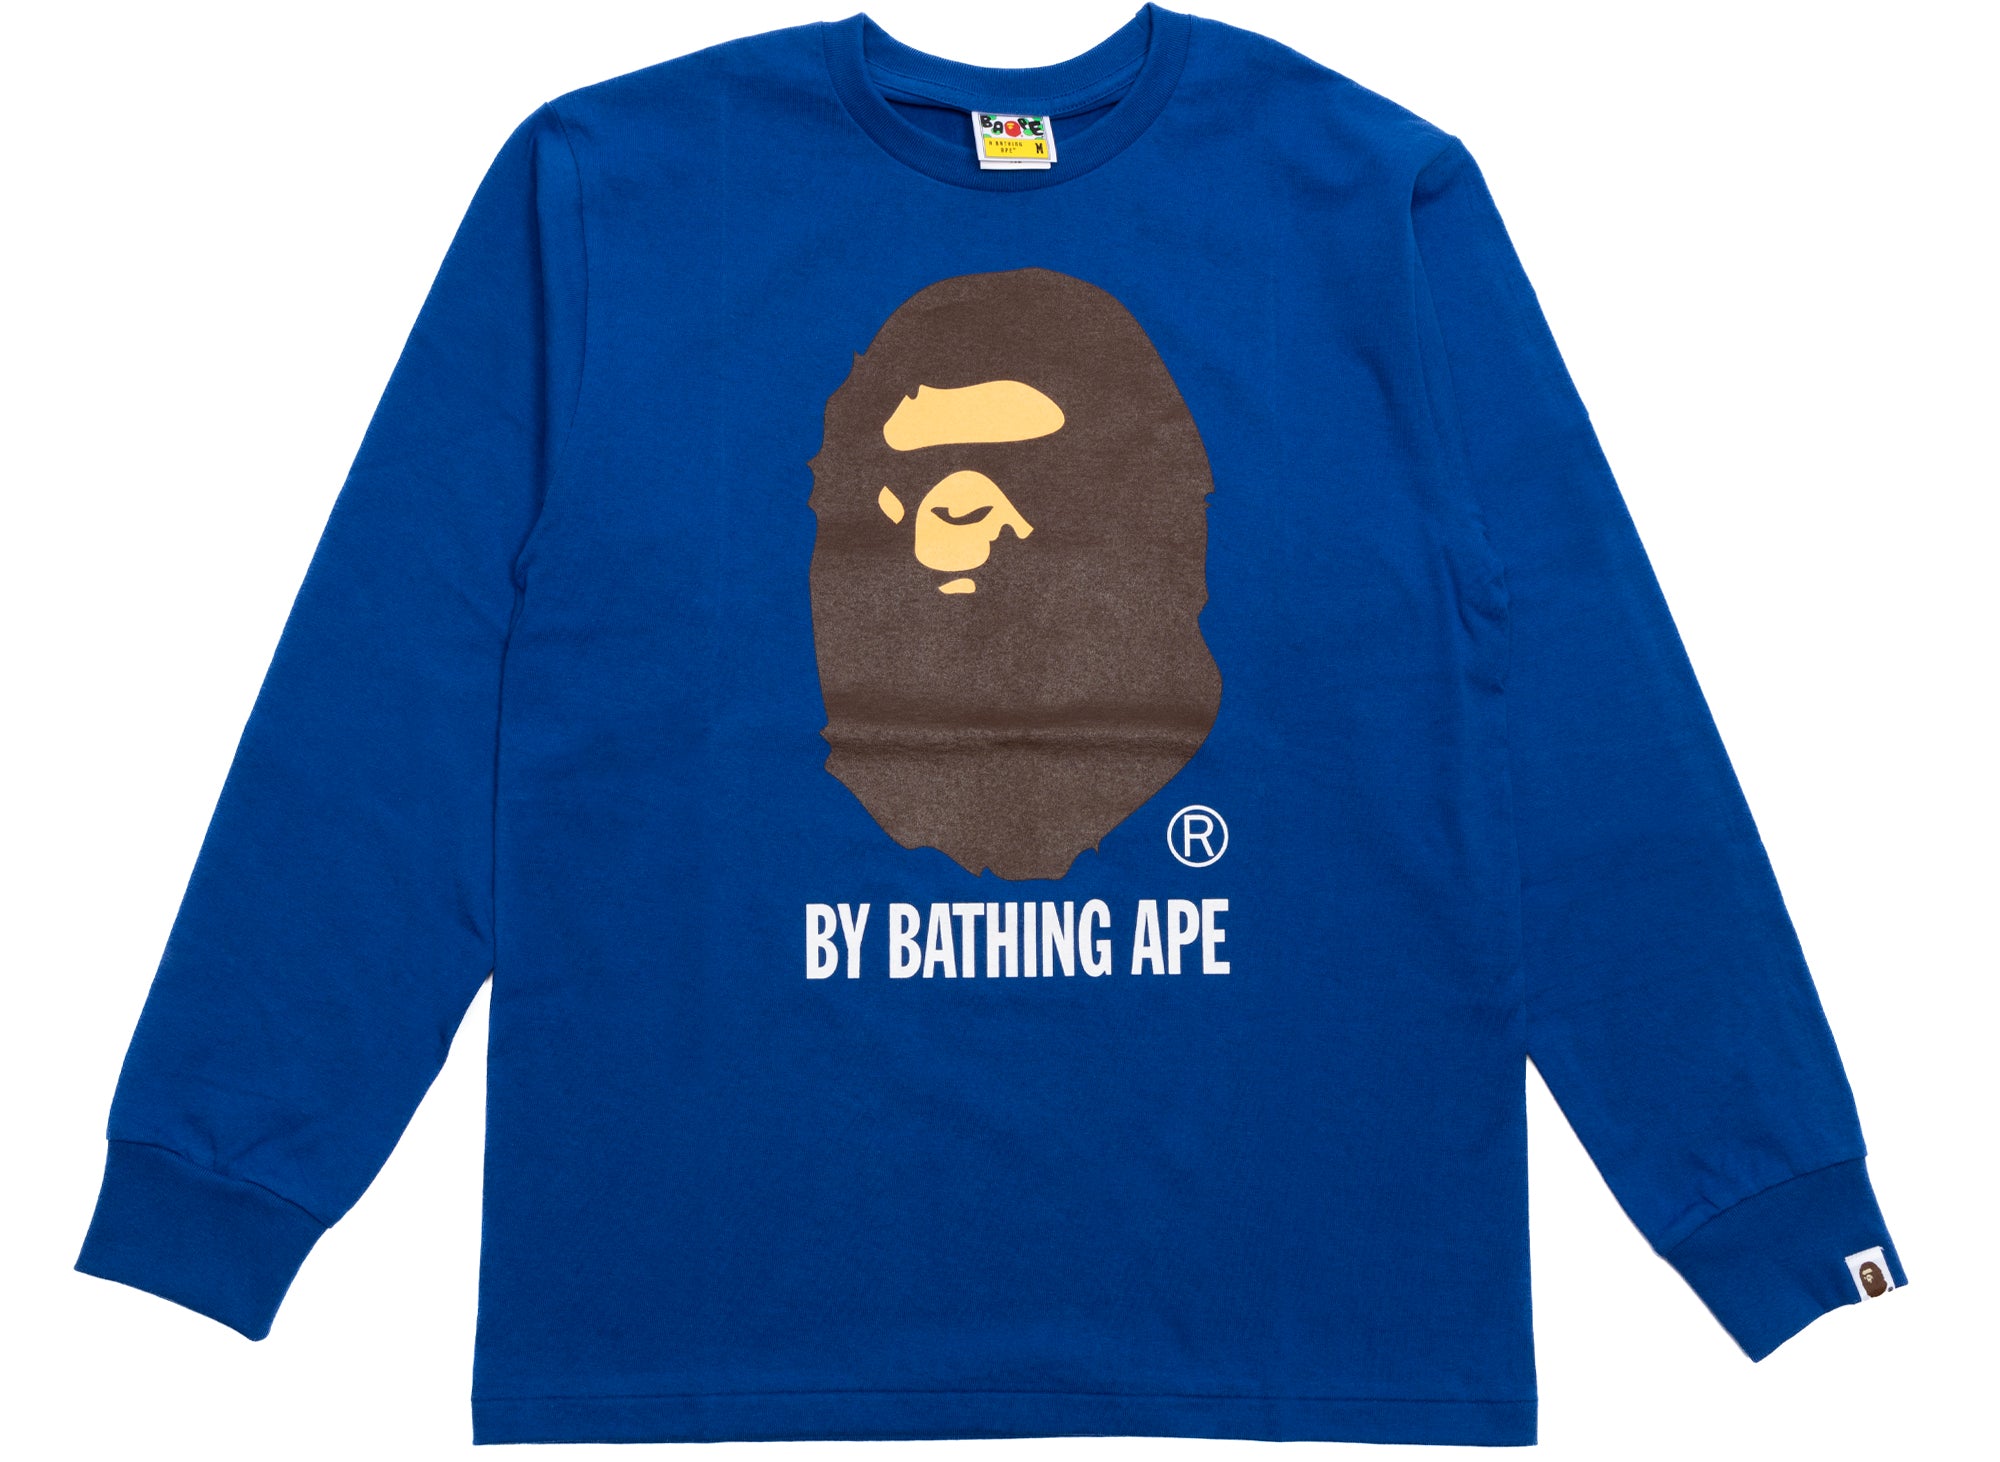 A Bathing Ape by Bathing Ape L/S Tee in Blue xld